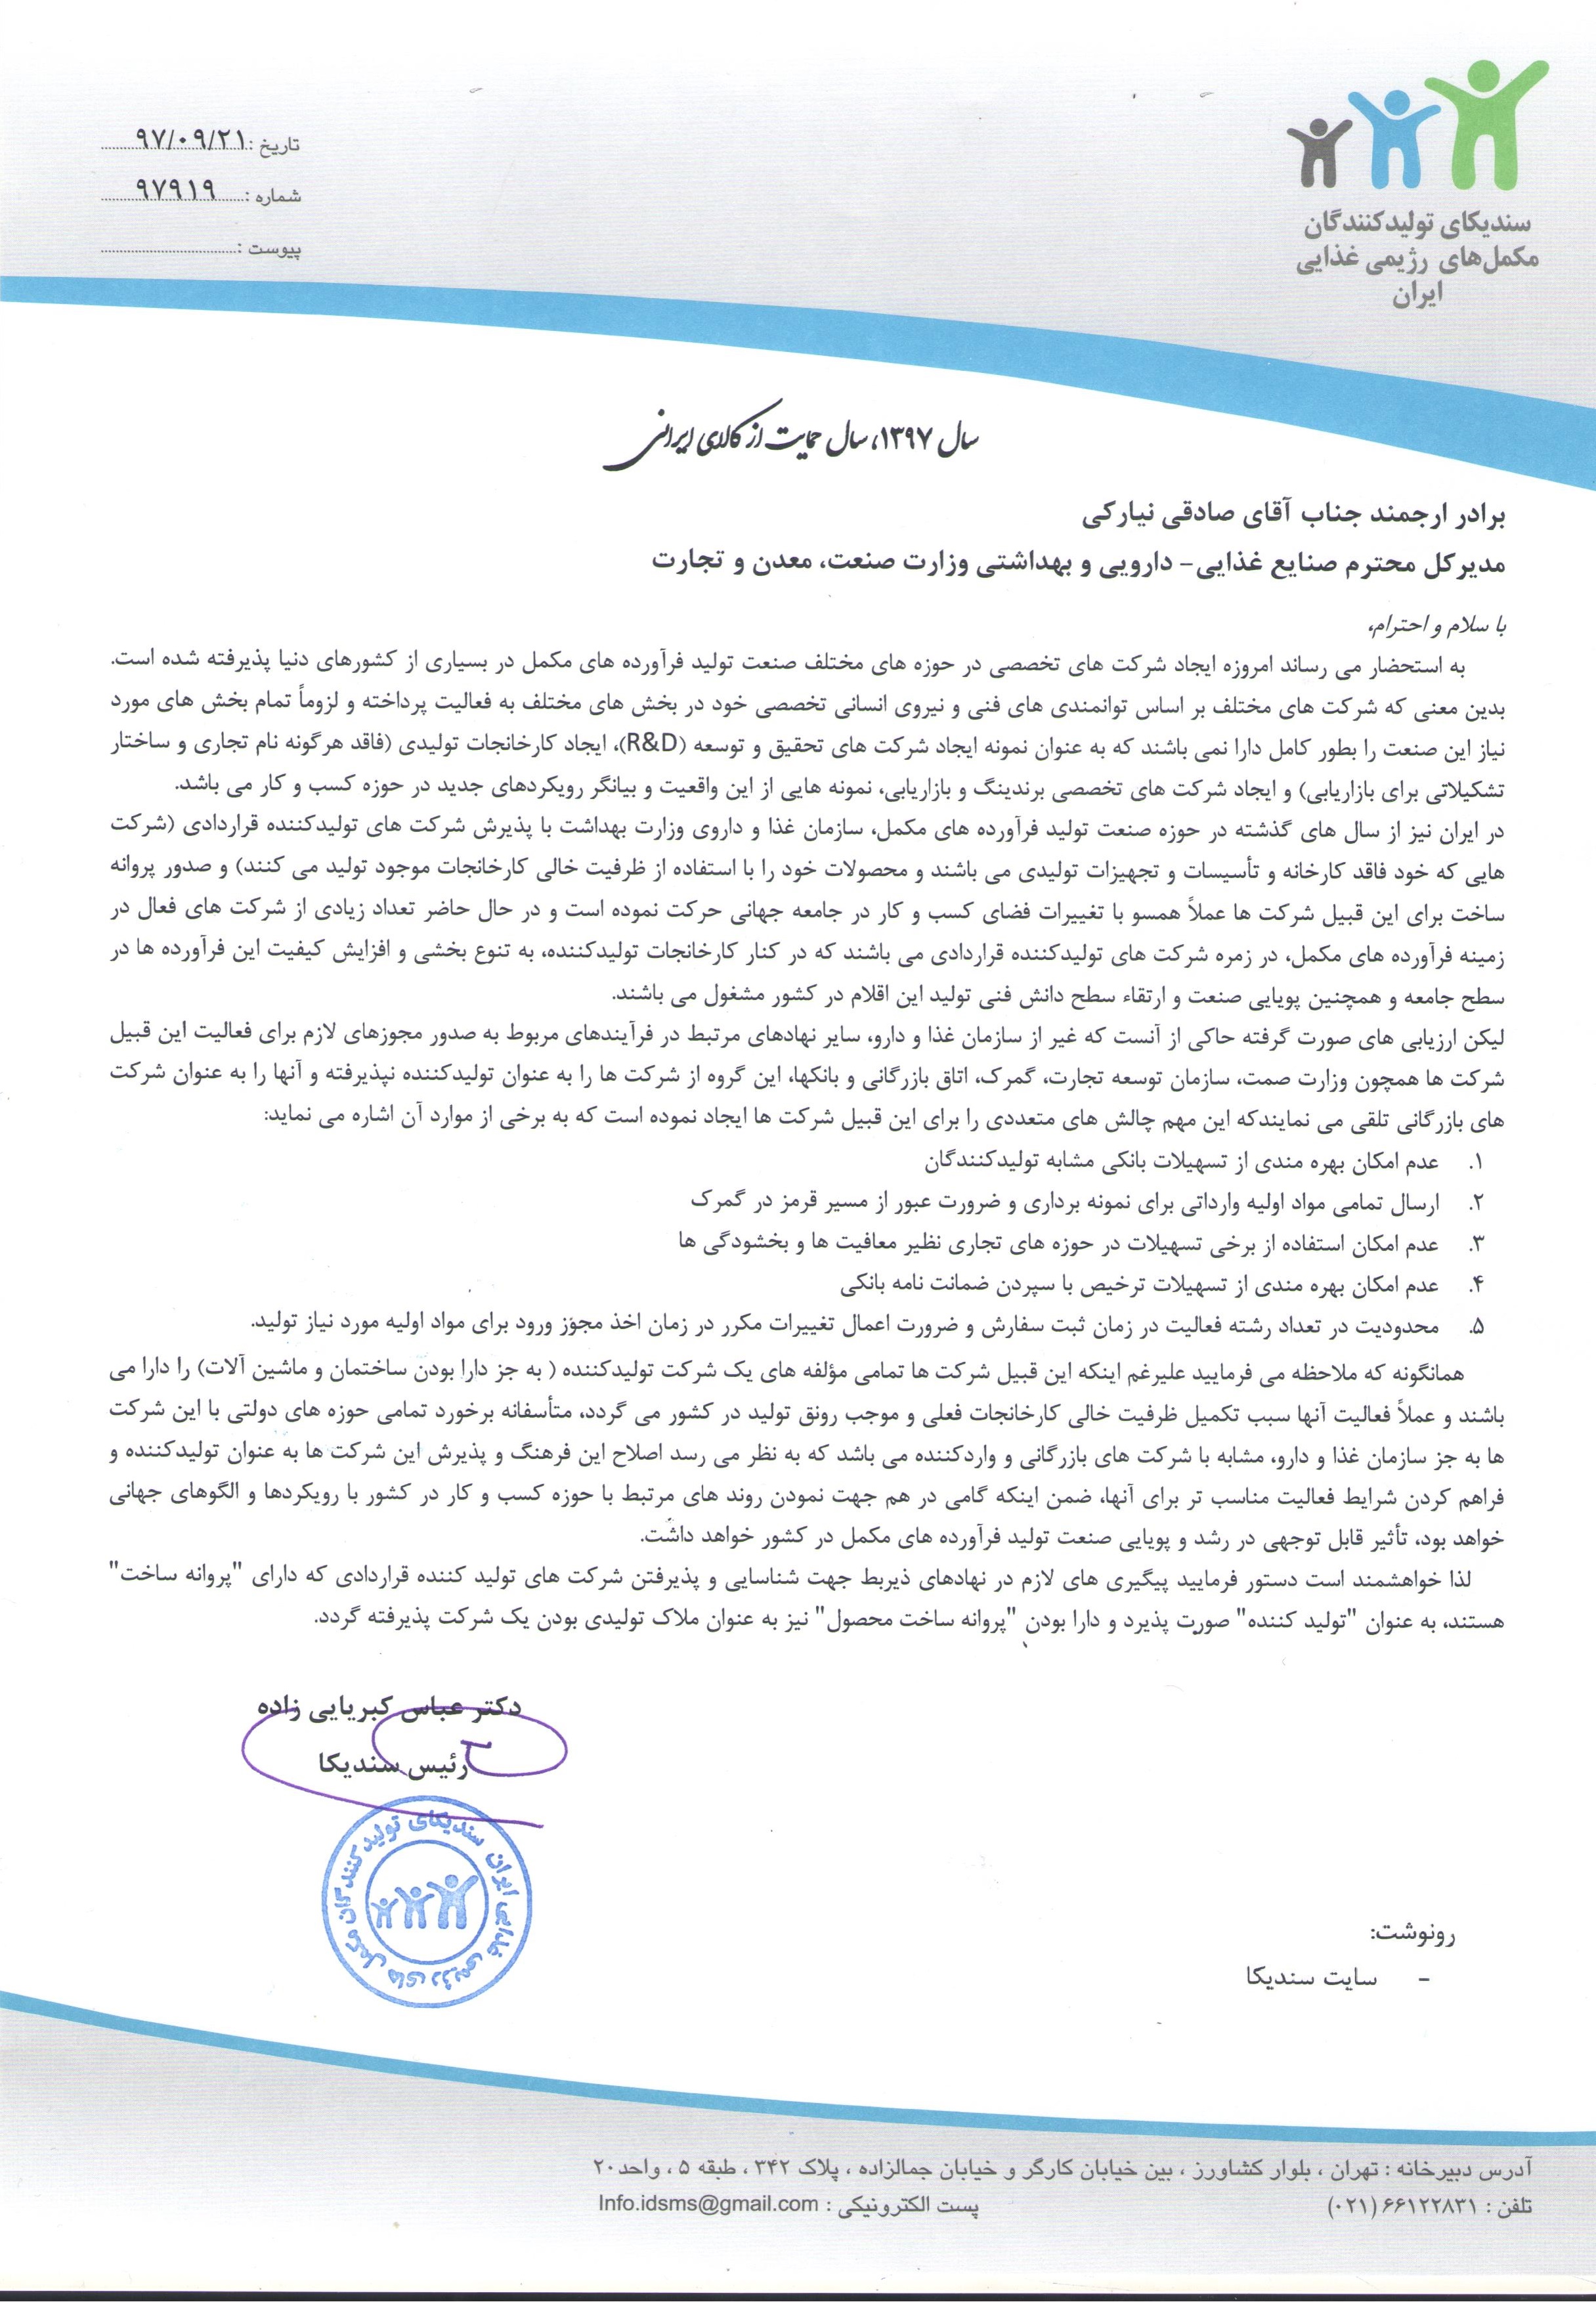 نامه در خصوص شرکت های دارای تولید قراردادی به اتاق بازرگانی تهران